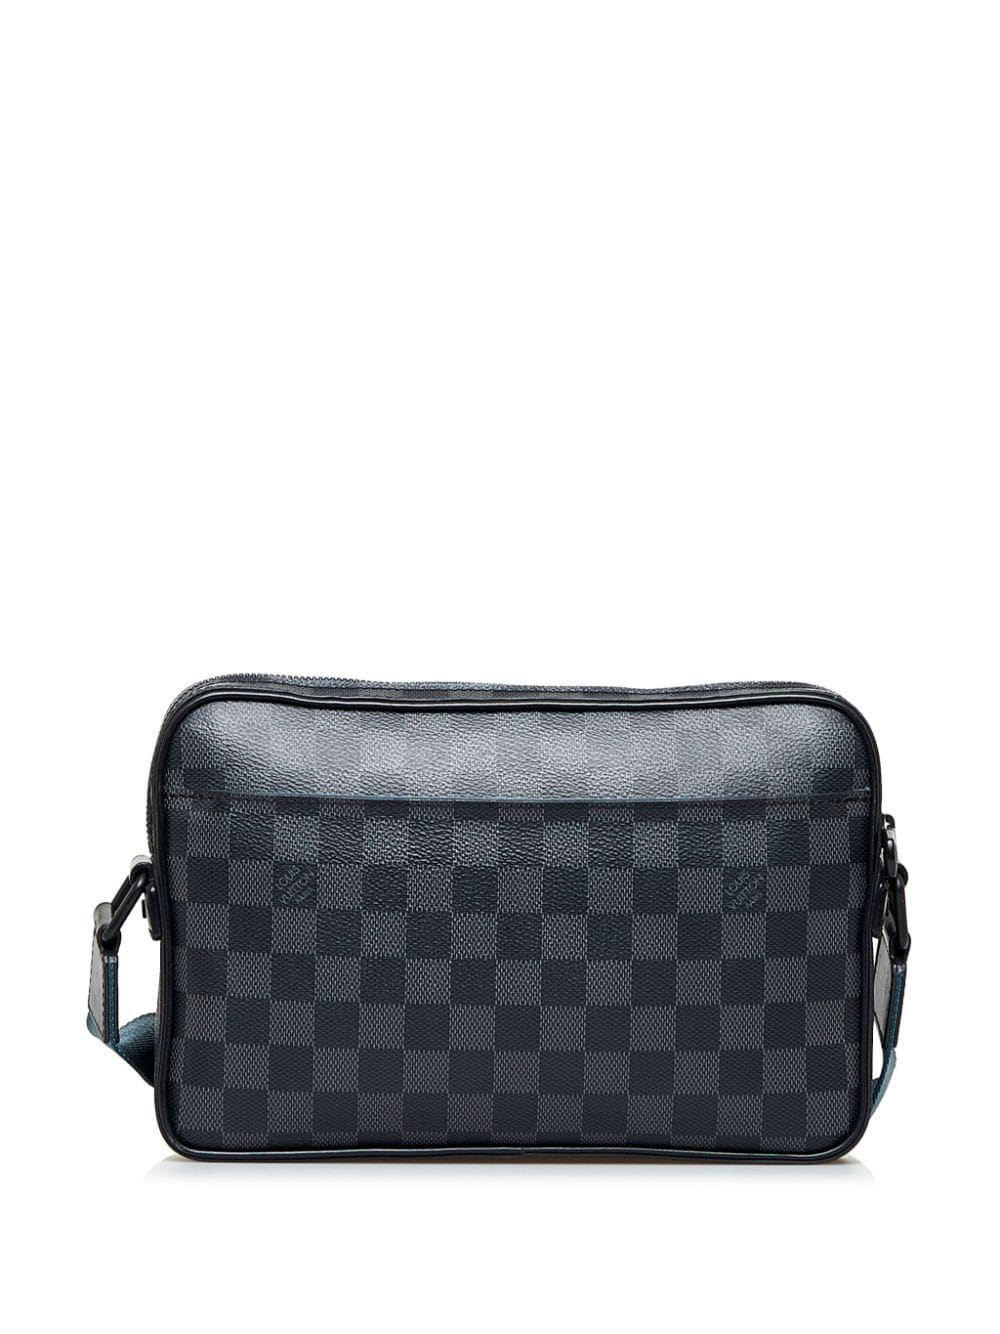 Louis Vuitton 2019 pre-owned Alpha messenger bag - Zwart